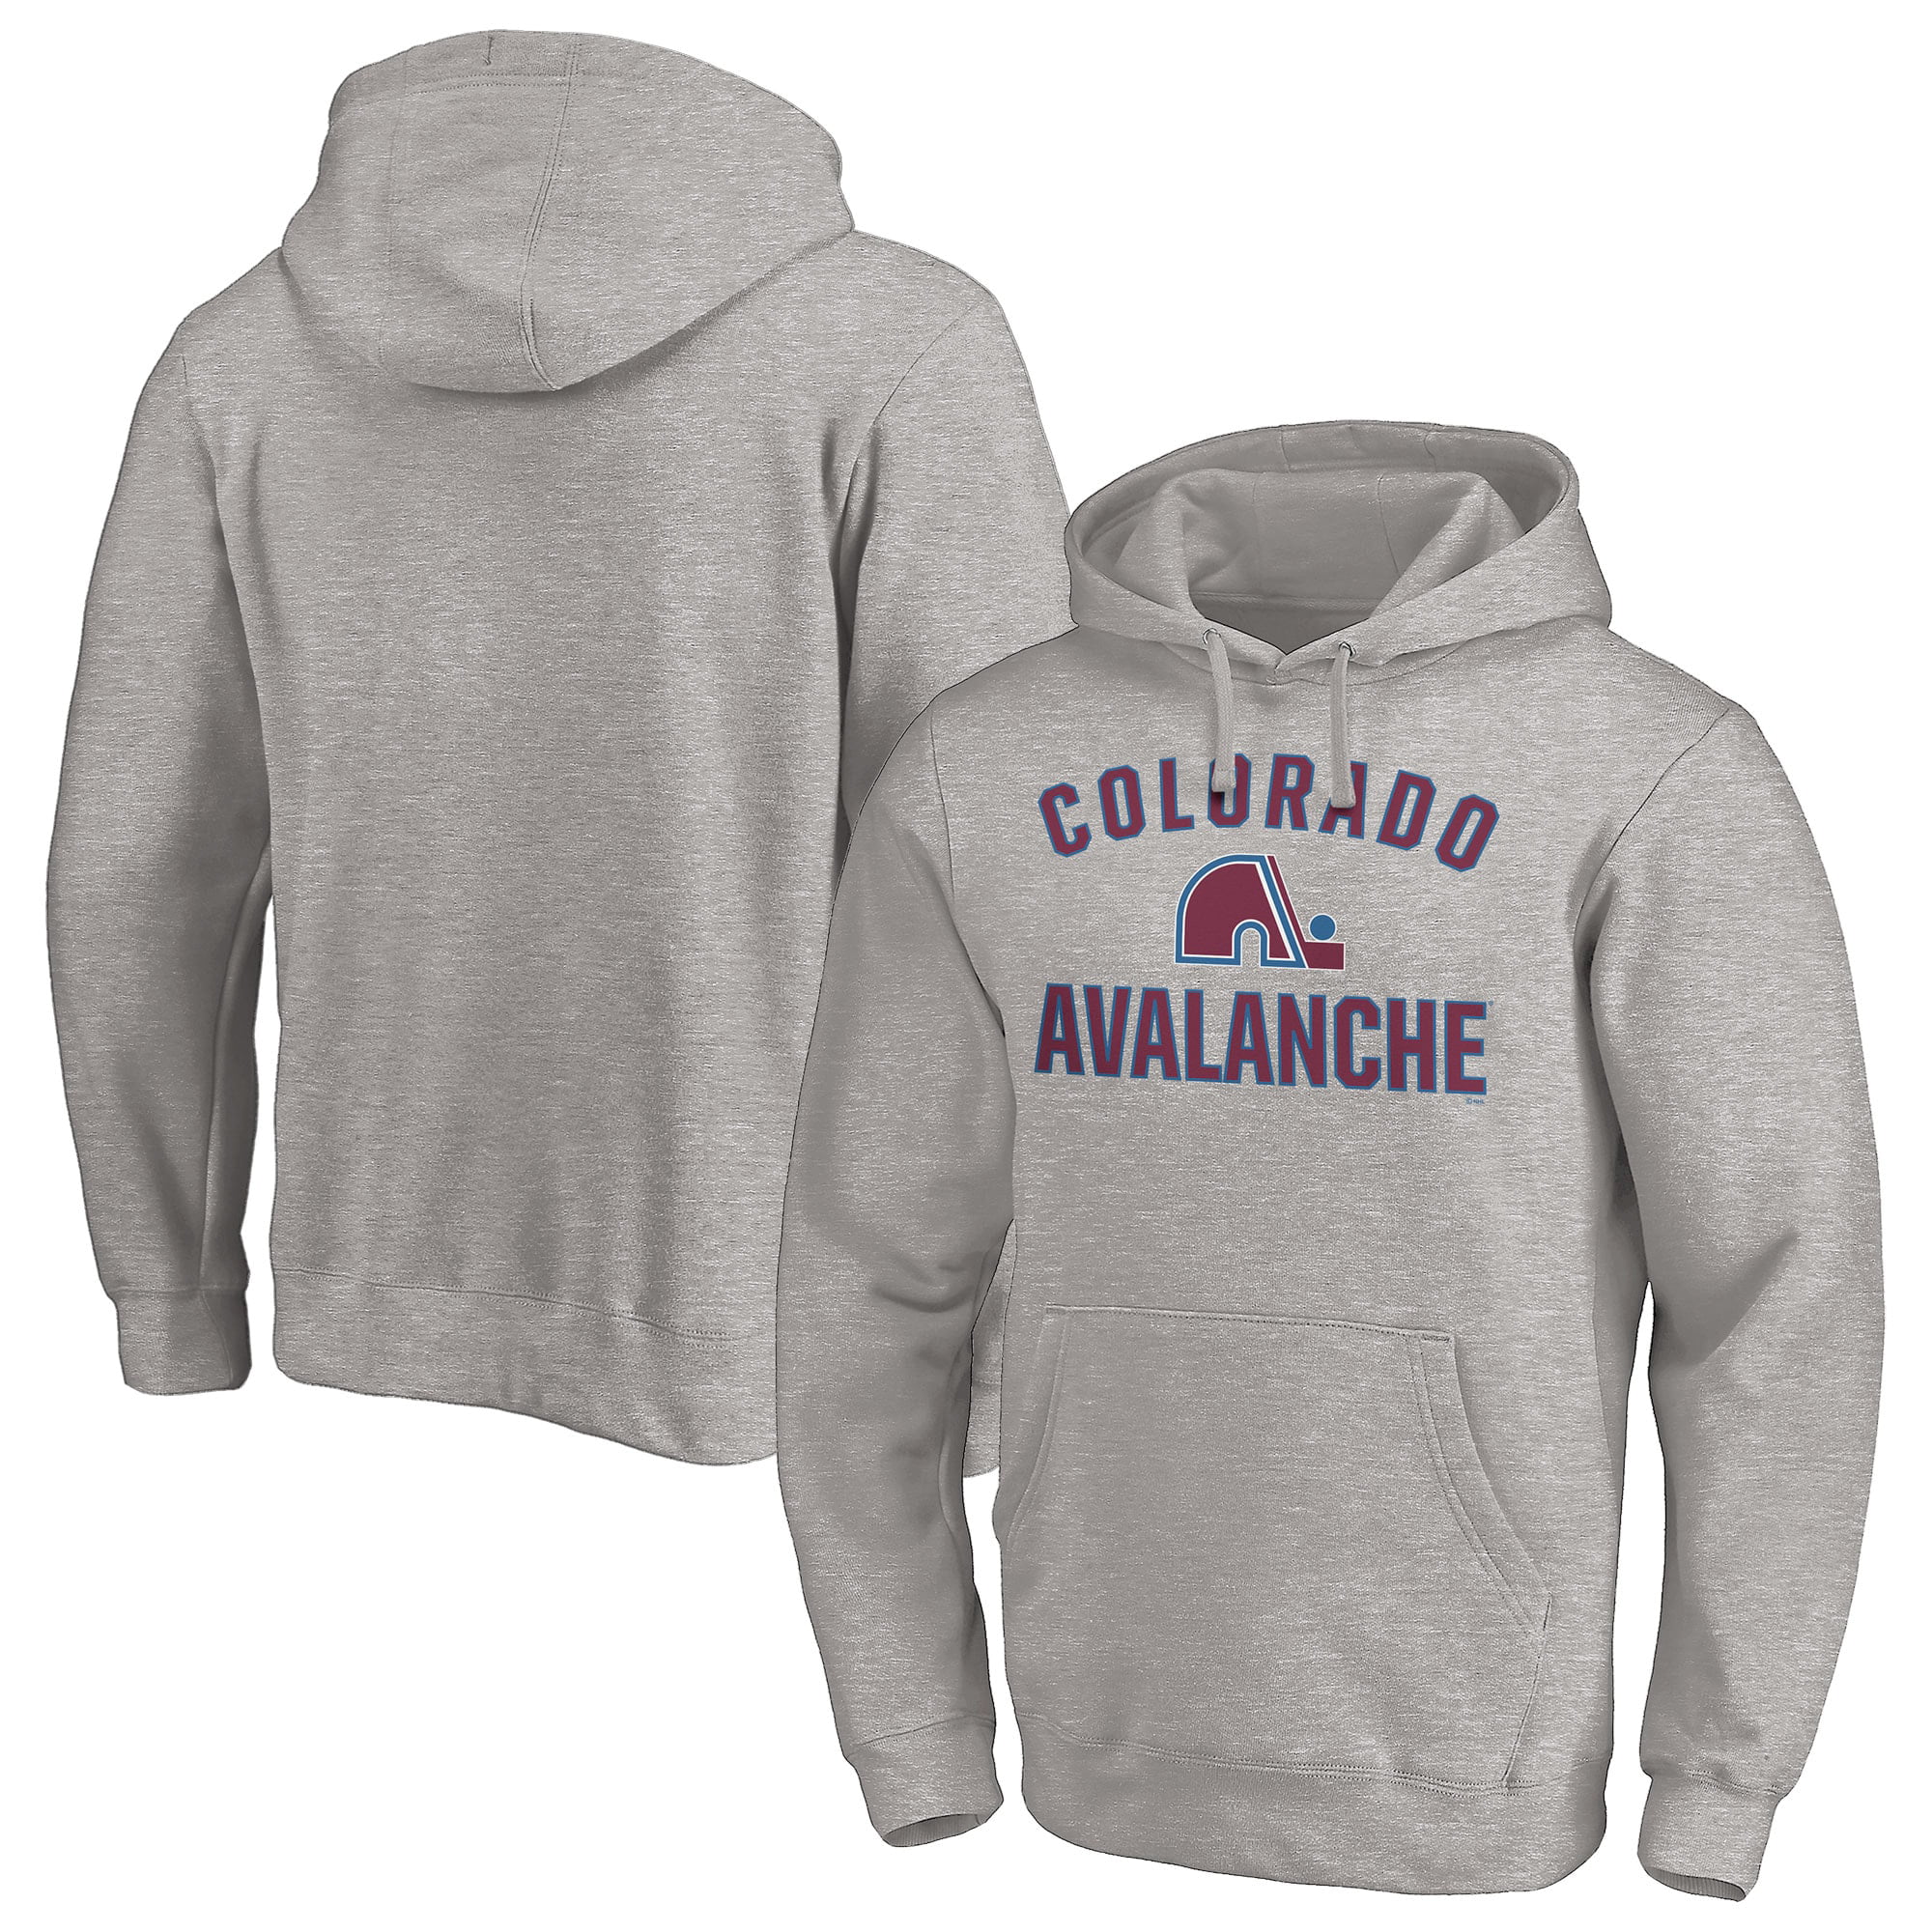 Vintage Style Crewneck Retro Colorado Avalanche Ice Hockey Sweatshirt Men's & Women's Football Apparel